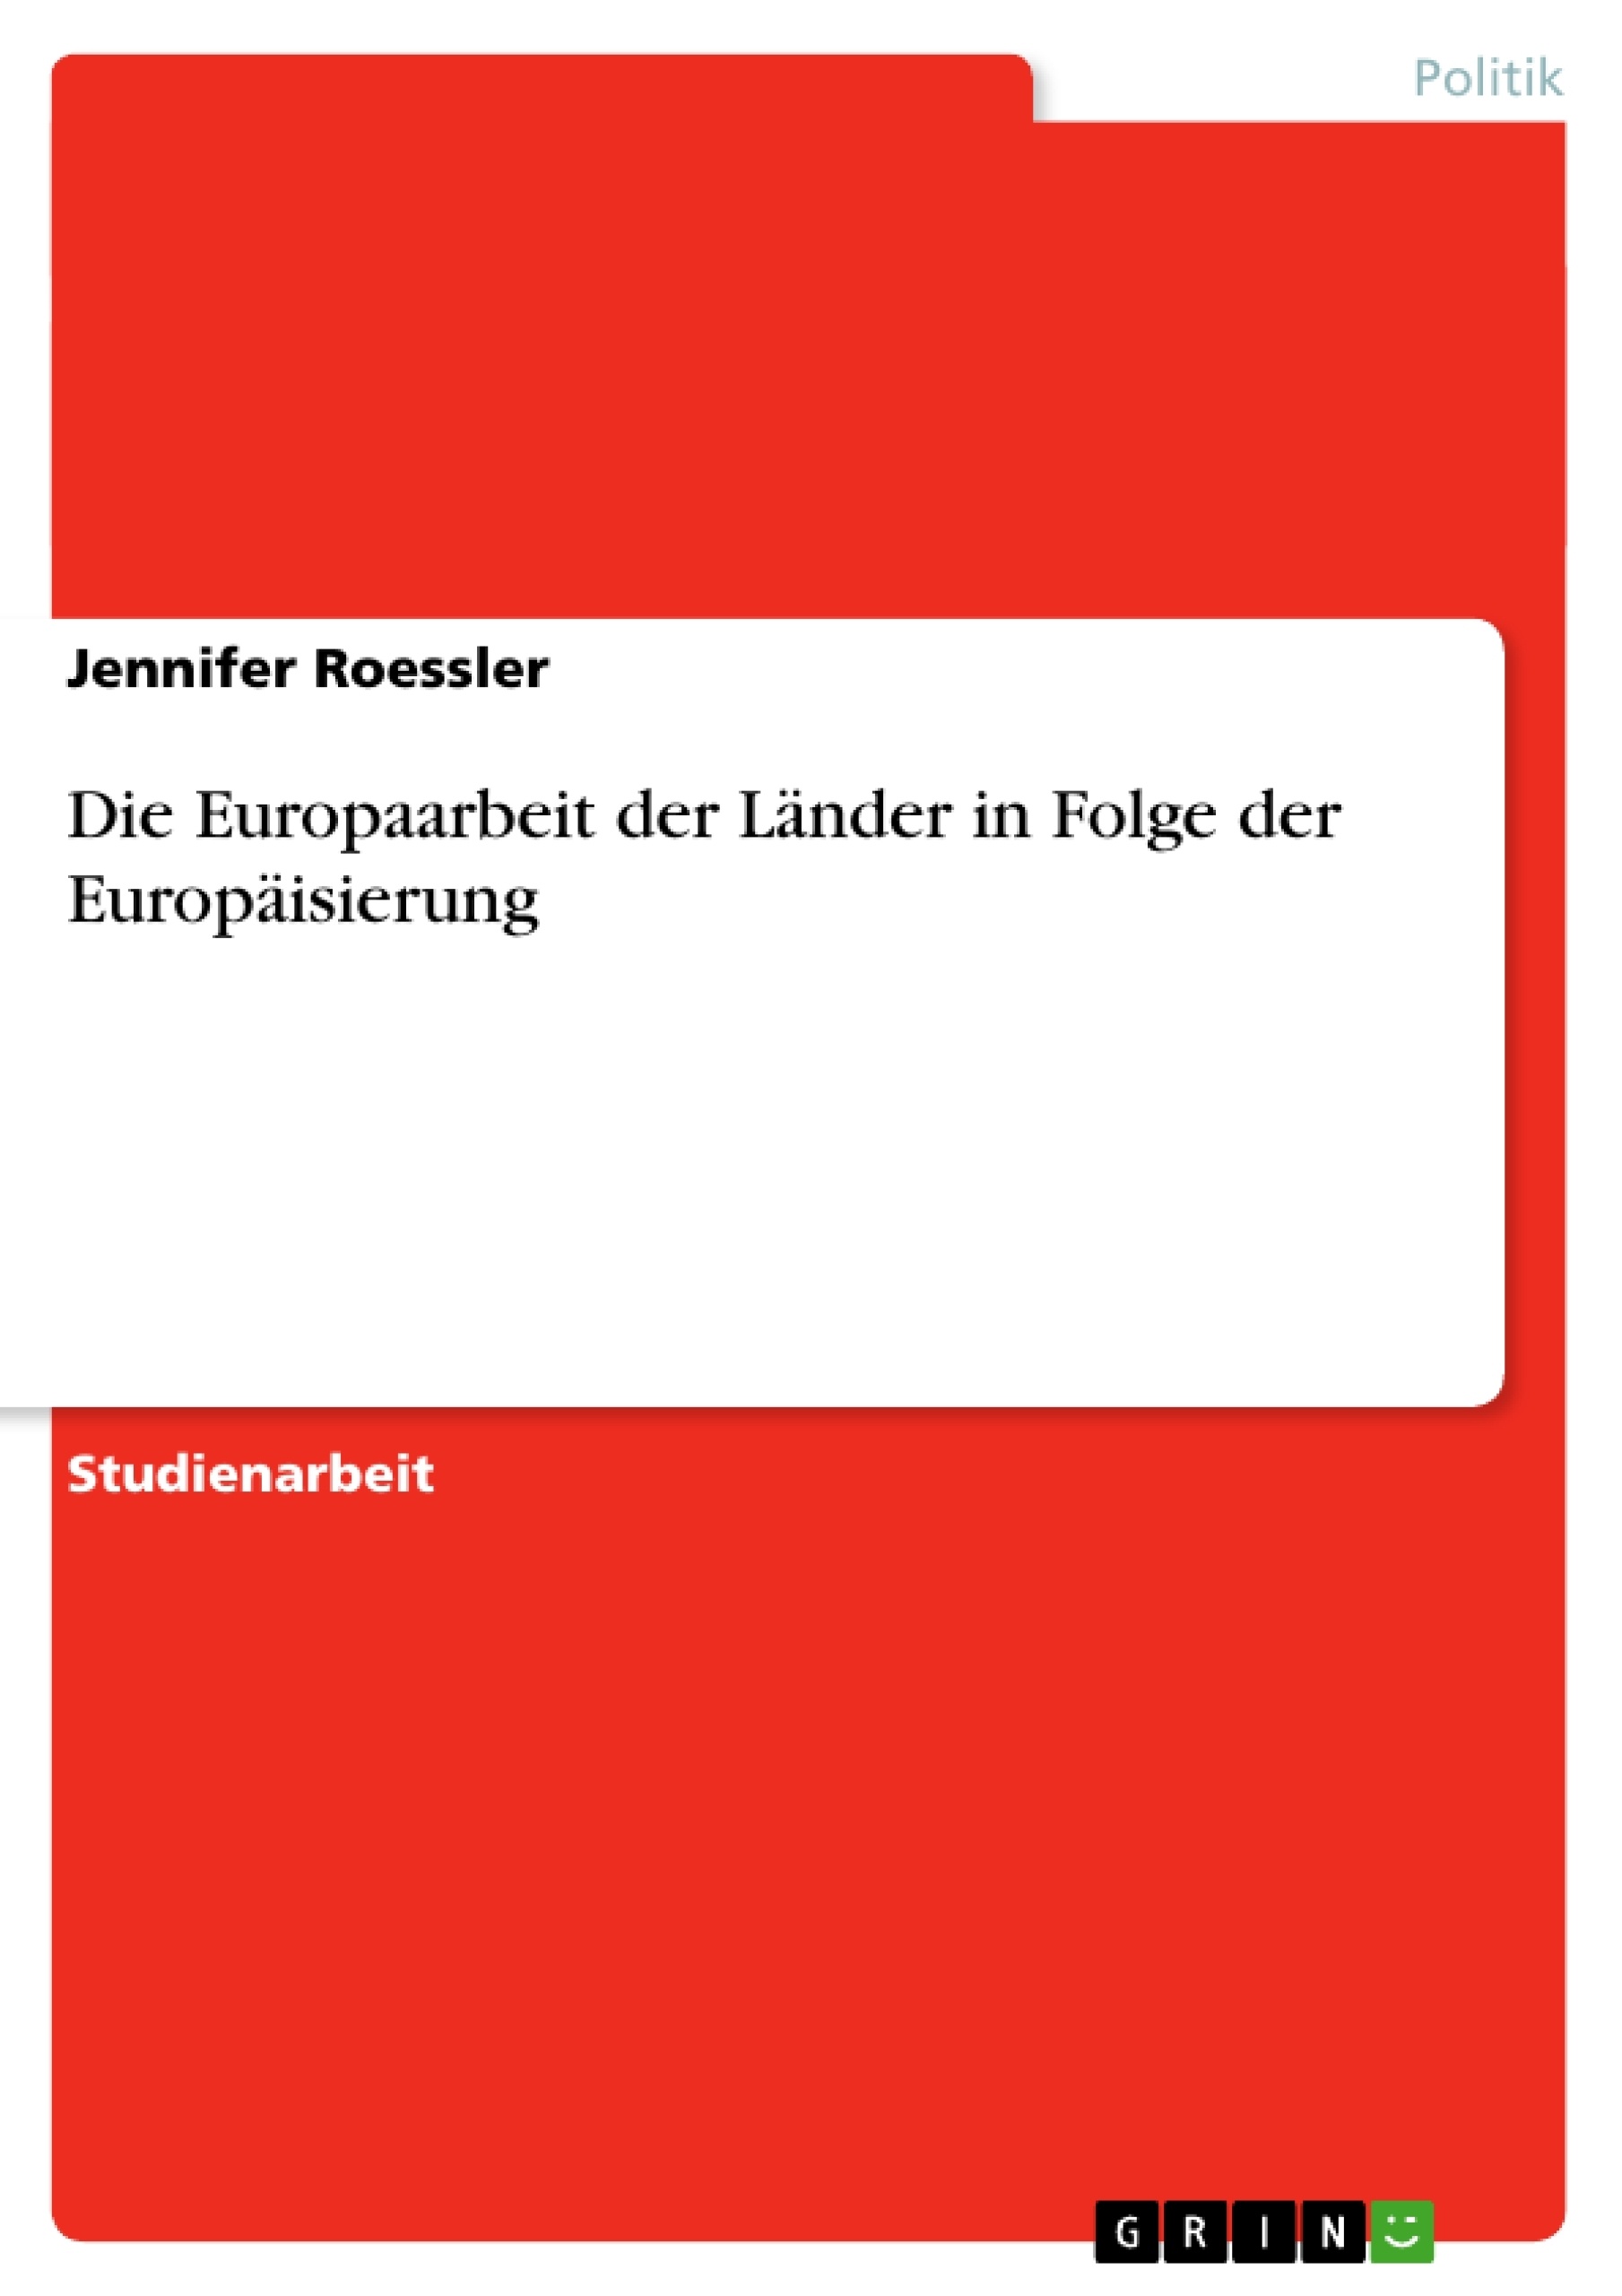 Titre: Die Europaarbeit der Länder in Folge der Europäisierung